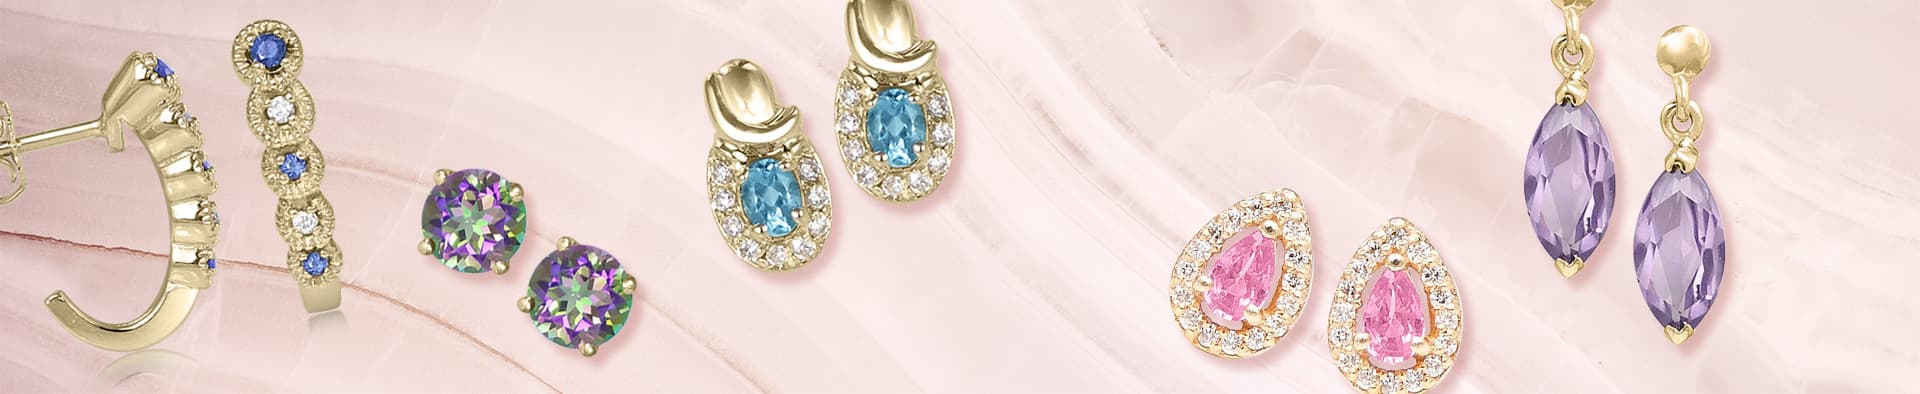 Gemstone earrings colored stones